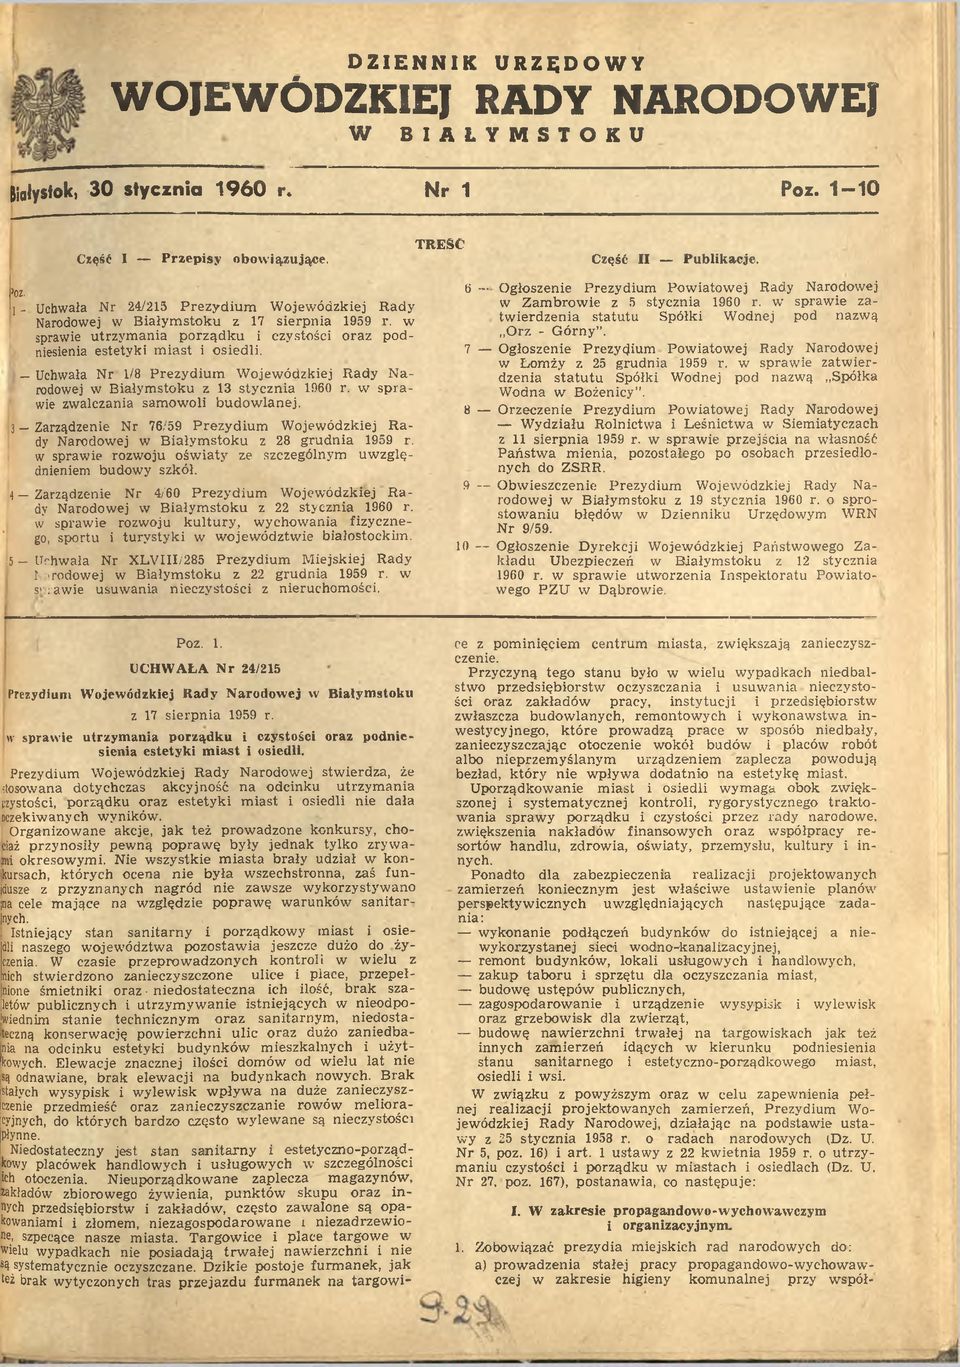 Uchwała Nr 1/8 Prezydium Wojewódzkiej Rady Narodowej w Białymstoku z 13 stycznia 1960 r. w sprawie zwalczania samowoli budowlanej.